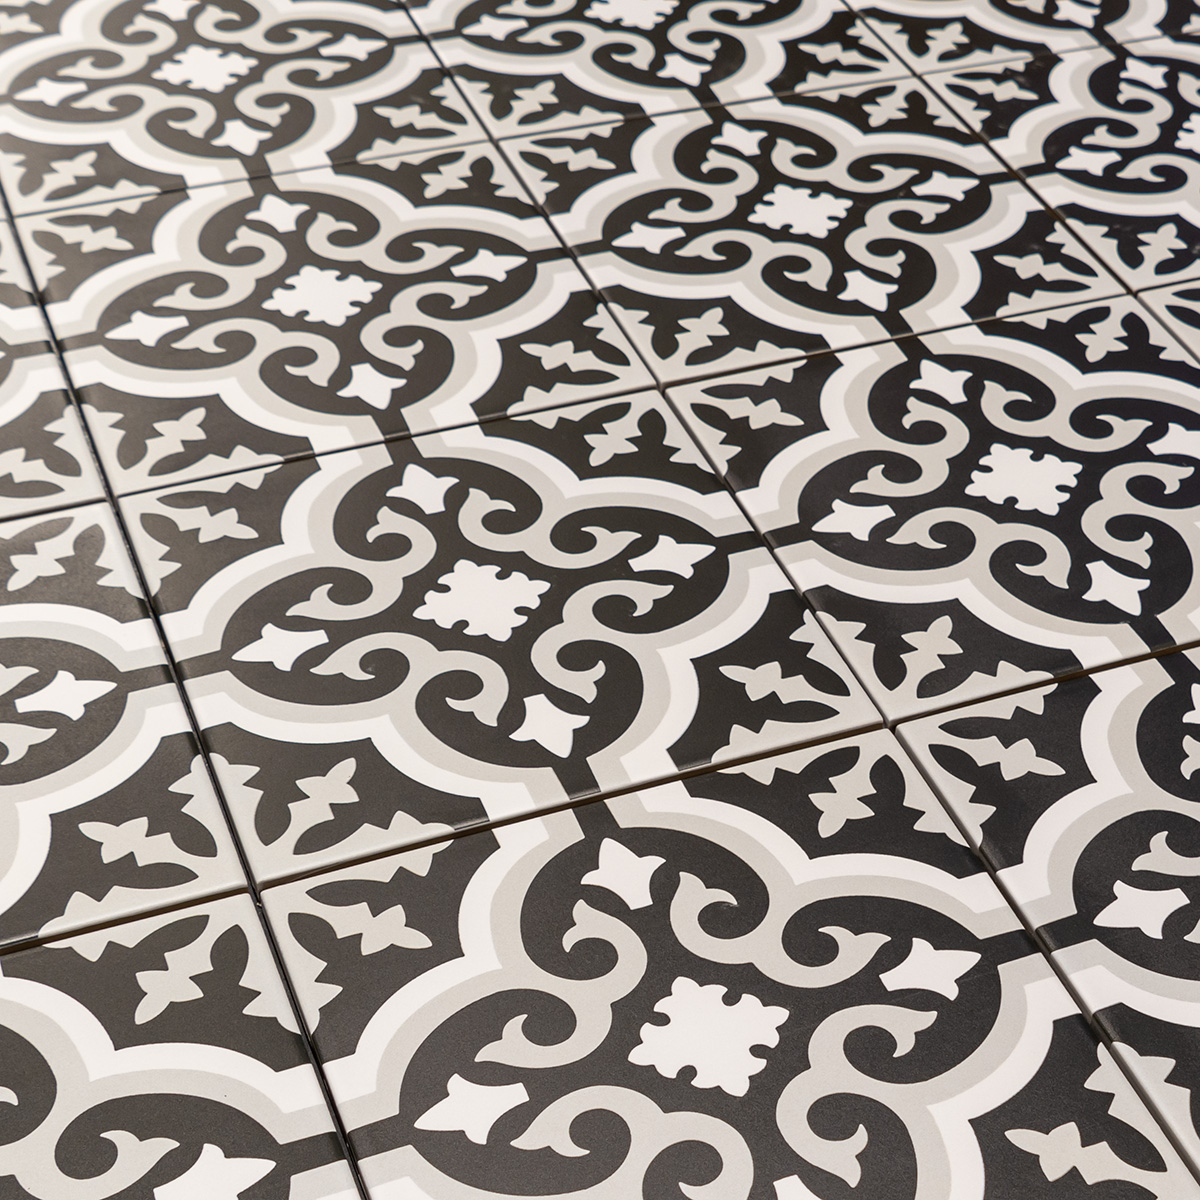 Keramische portugese vloertegels 20x20 zwart met wit en grijs bloemetjes patroon